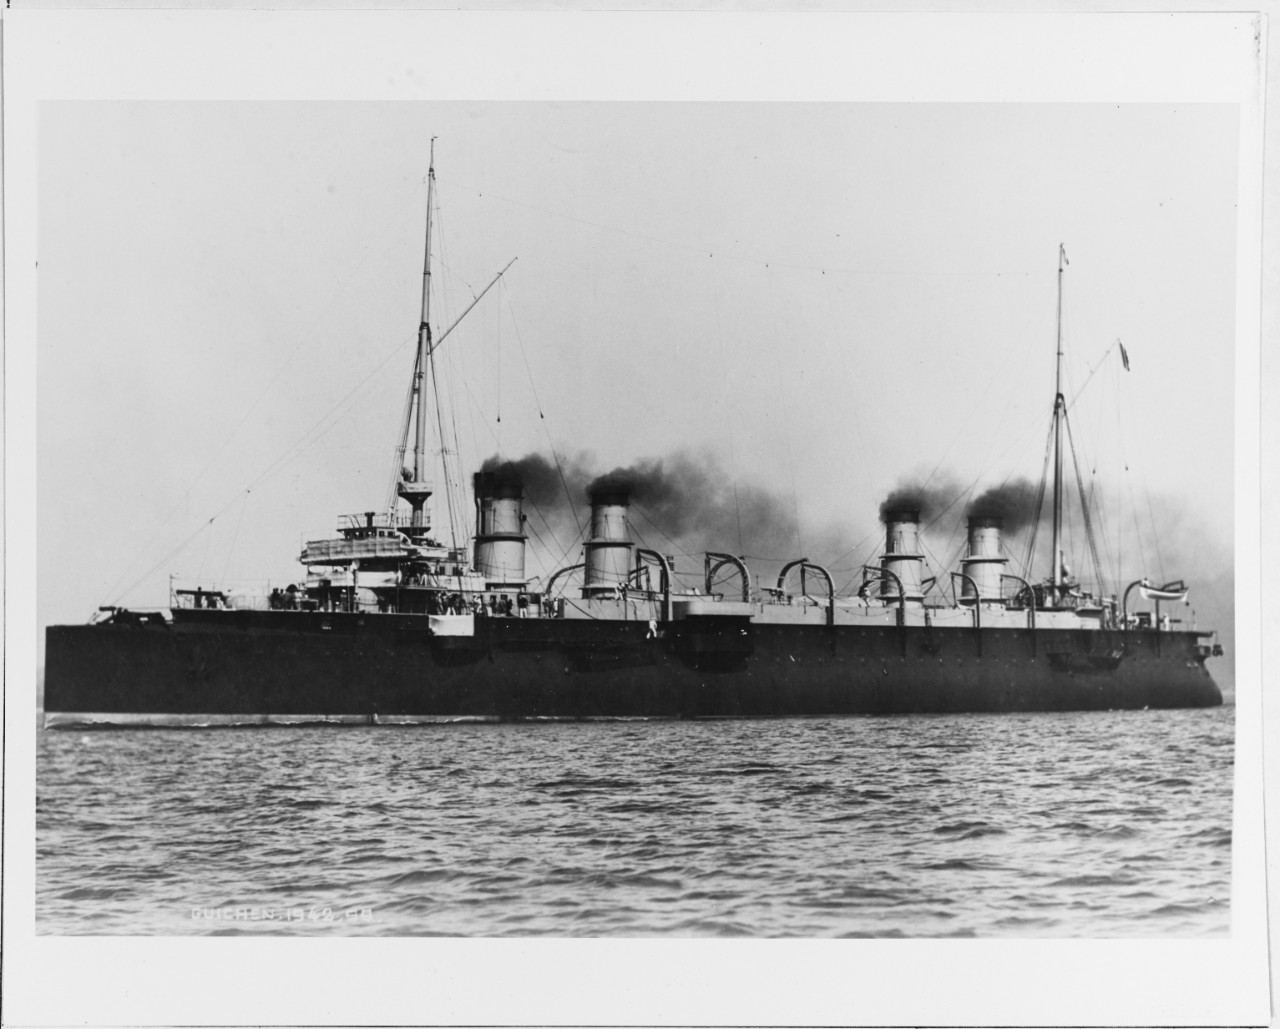 GUICHEN (French cruiser, 1897)